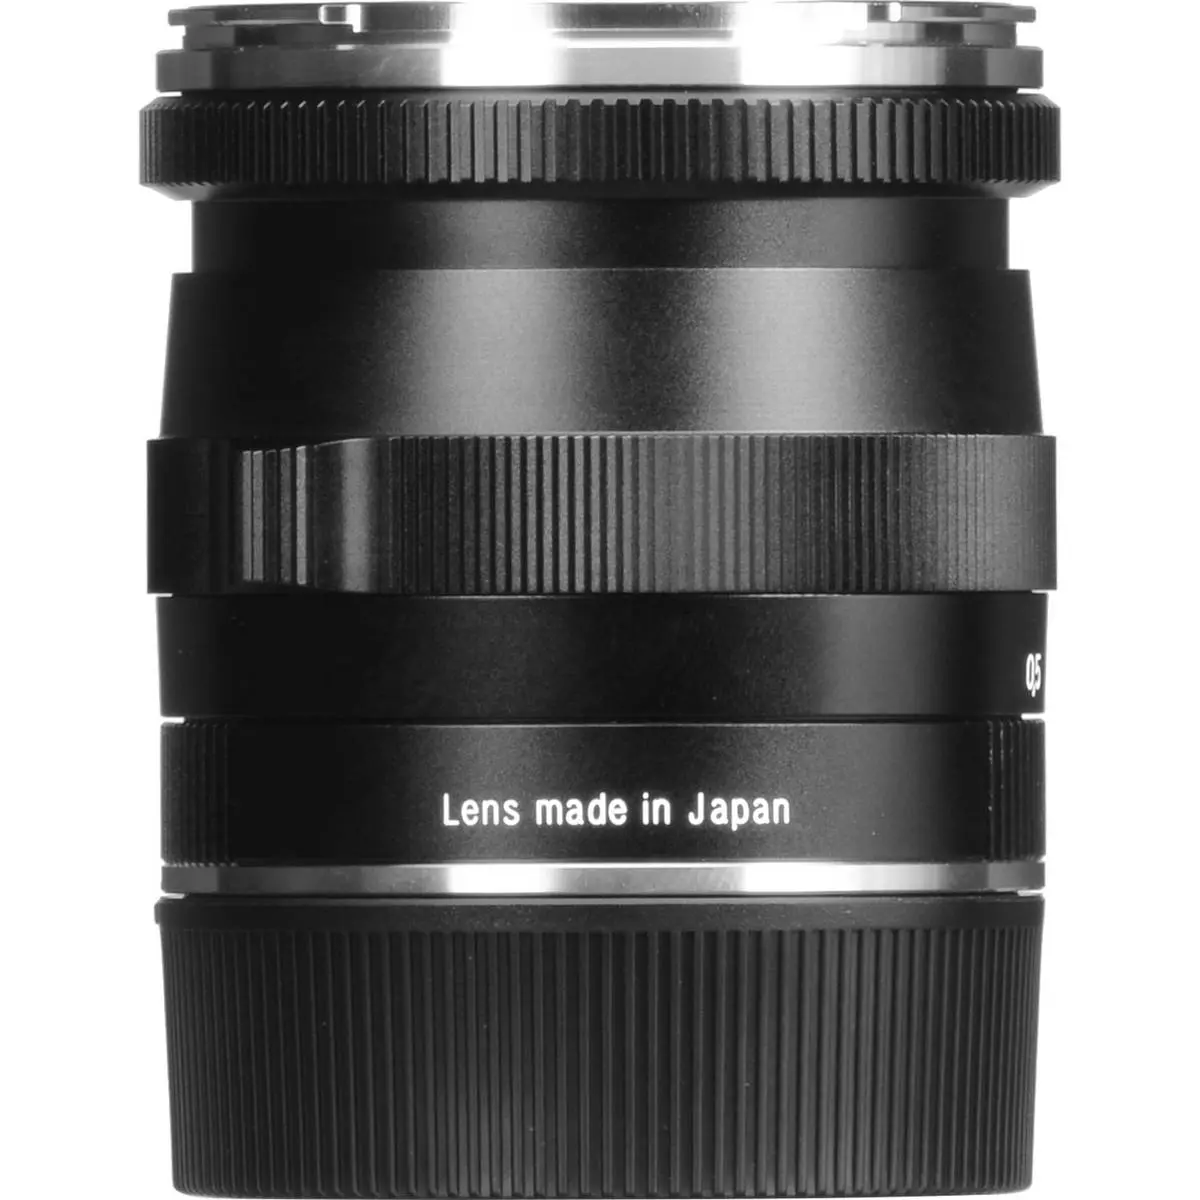 7. Carl Zeiss 21mm F/2.8 BIOGON T* ZM (Leica M) Black Lens